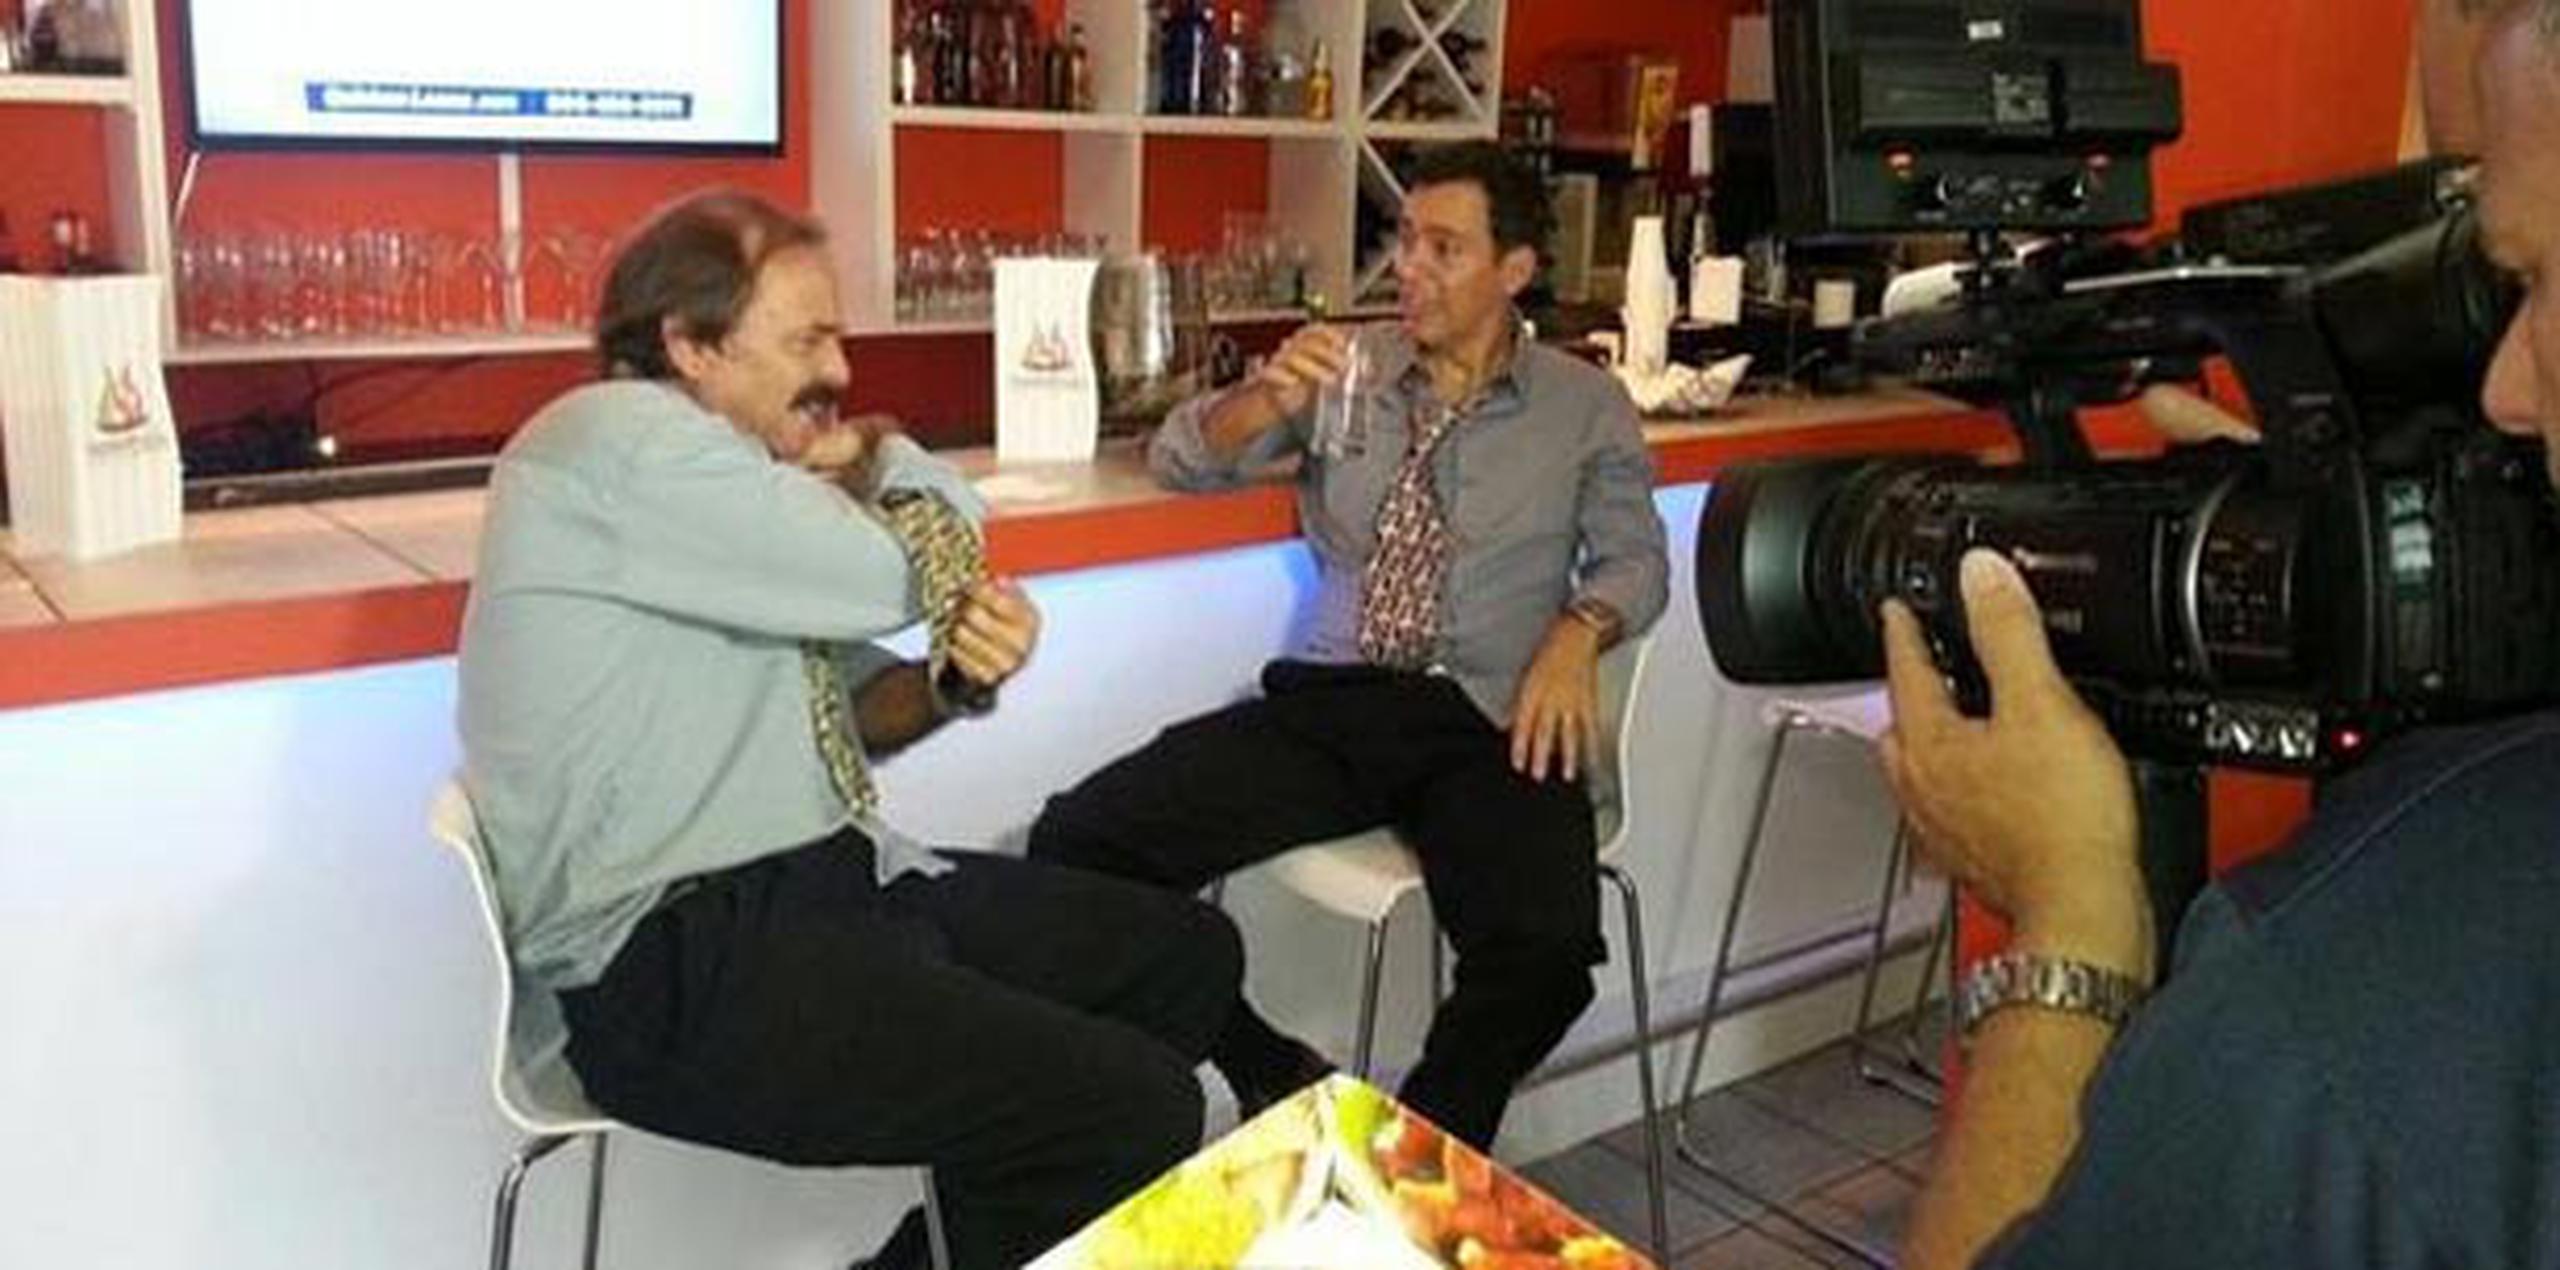 René Monclova y Jorge Castro les darán vida a “los borrachitos” en el nuevo programa de Telemundo, “Raymond Arrieta y sus amigos”. (Suministrada)